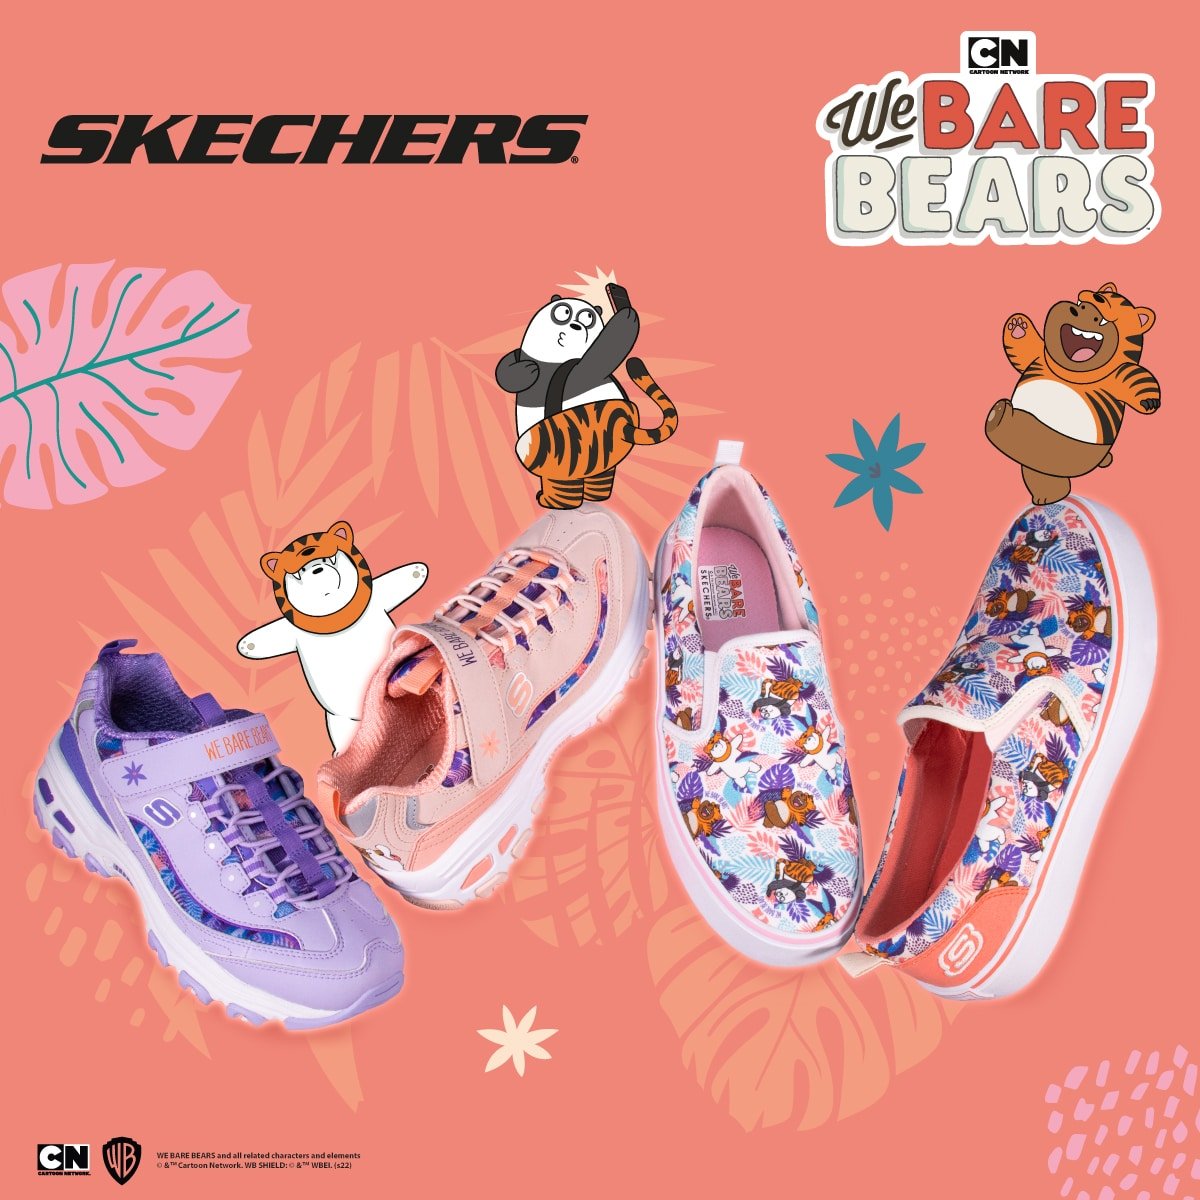 สเก็ตเชอร์ส ส่งสามหมีจอมป่วม We Bare Bears มาคำรามส่งความสุขต้อนรับปีเสือ ในคอลเลคชั่น SKECHERS X We Bare Bears